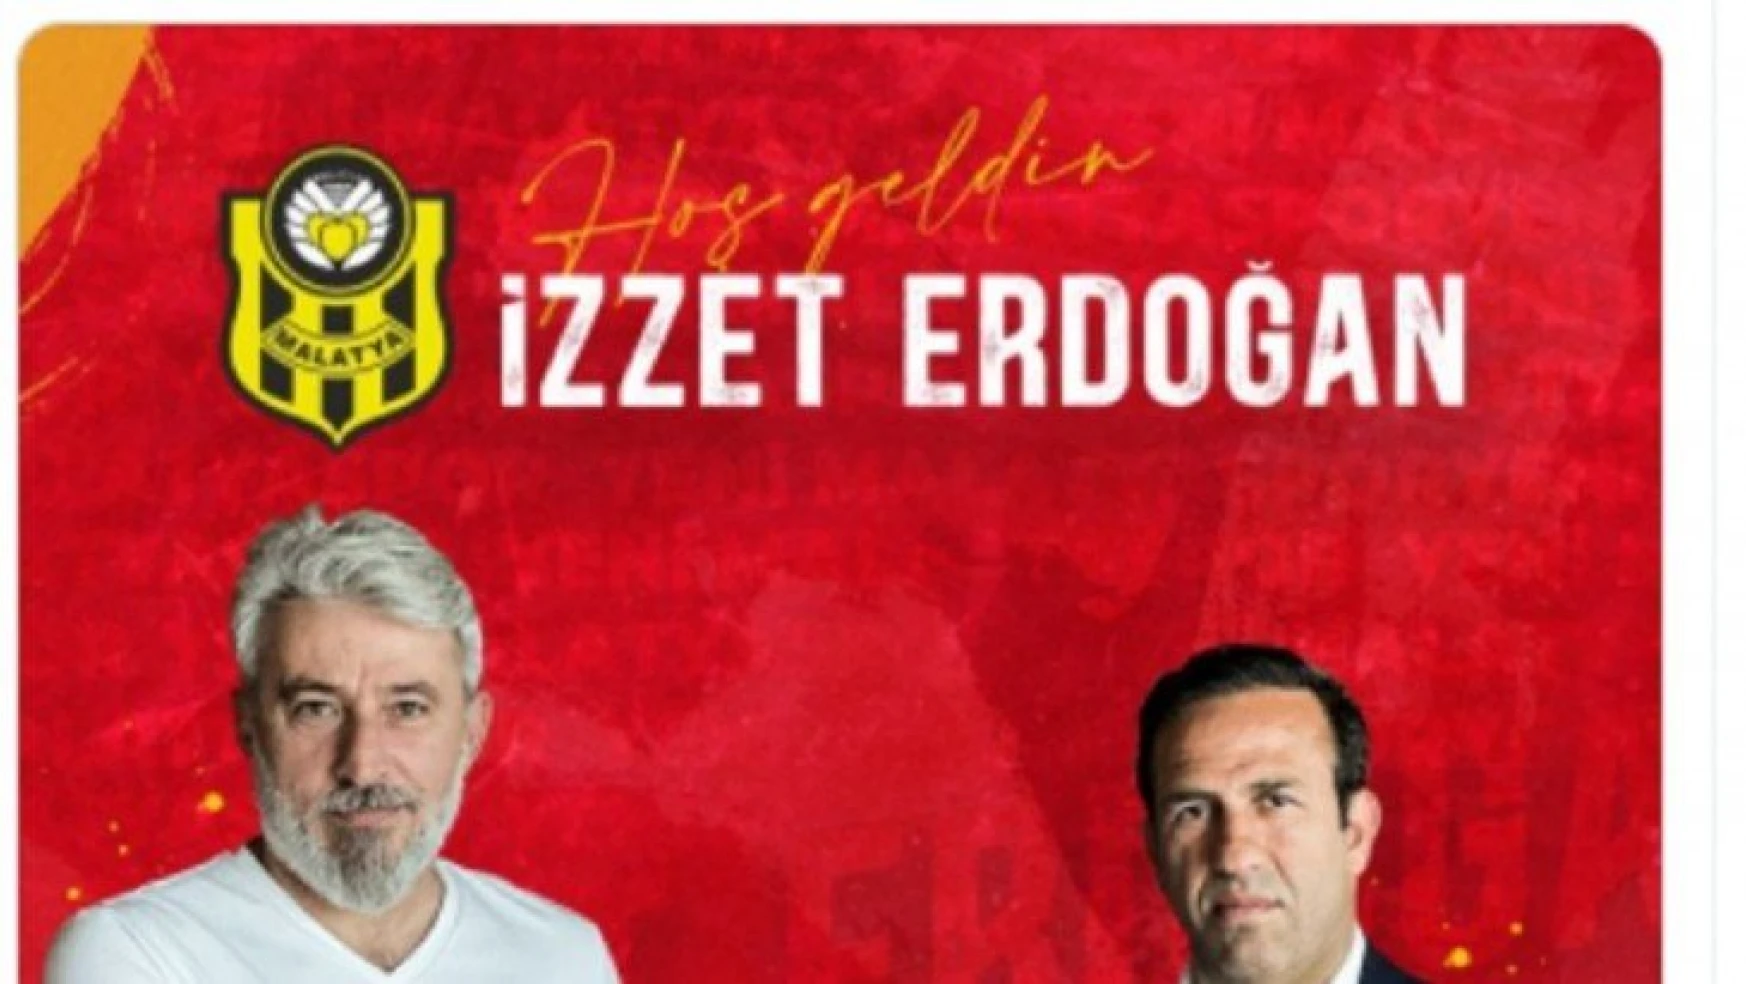 Yeni Malatyaspor'da sportif direktörlüğe İzzet Erdoğan getirildi